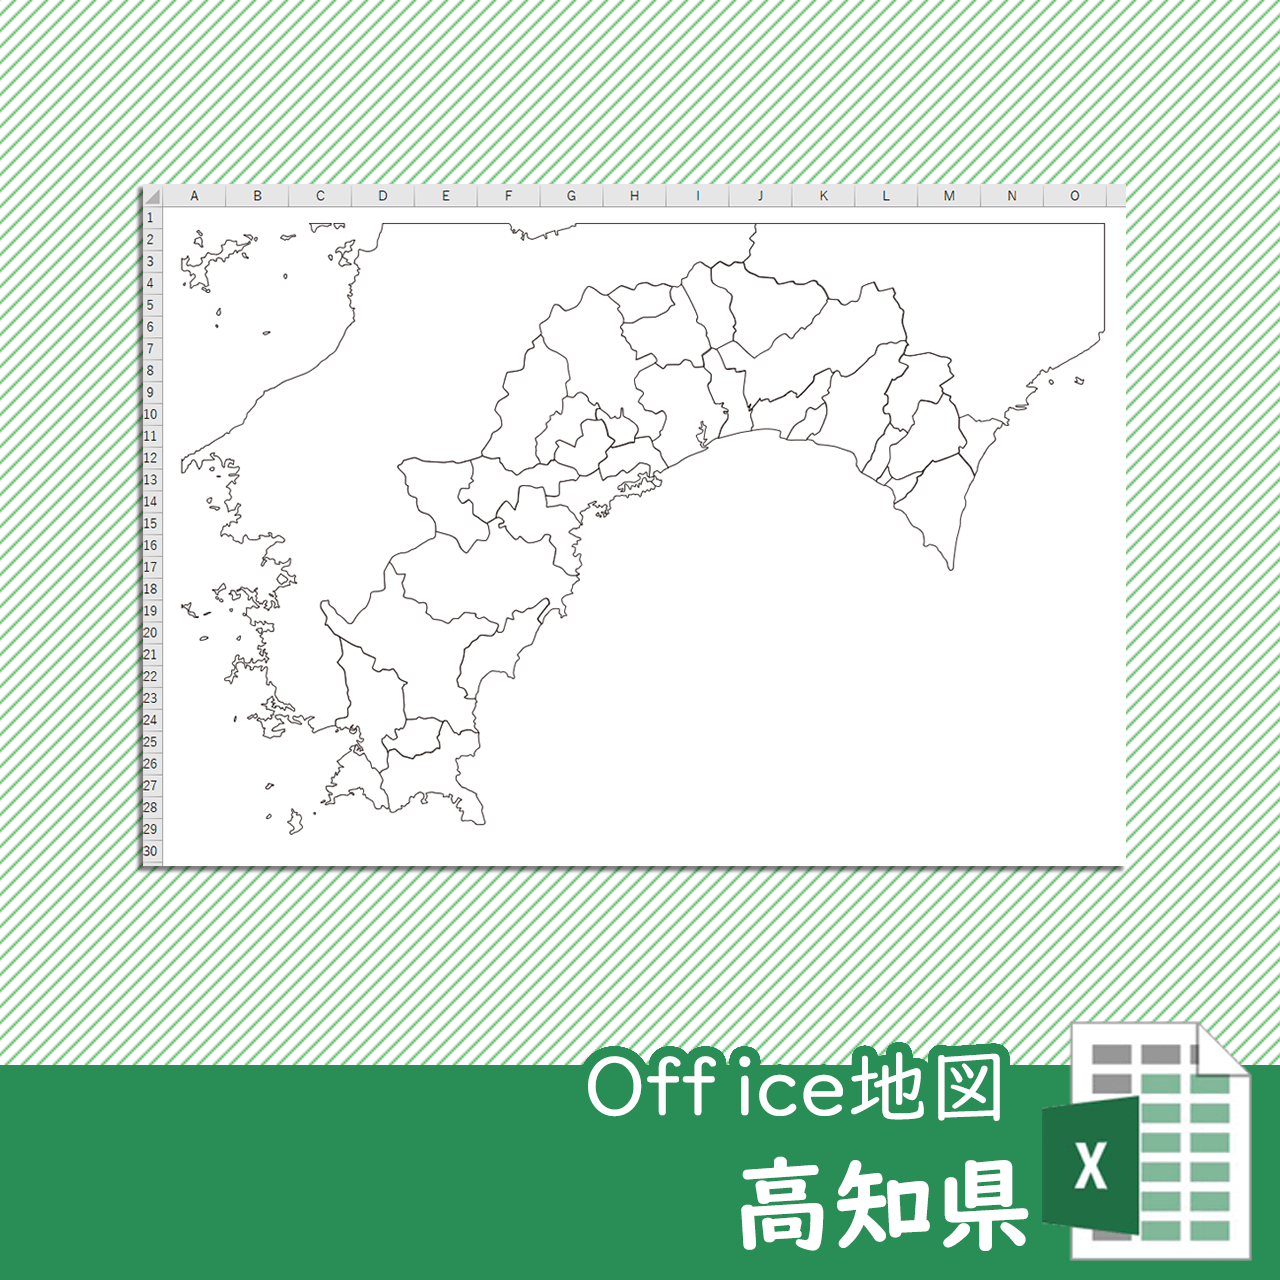 高知県のOffice地図のサムネイル